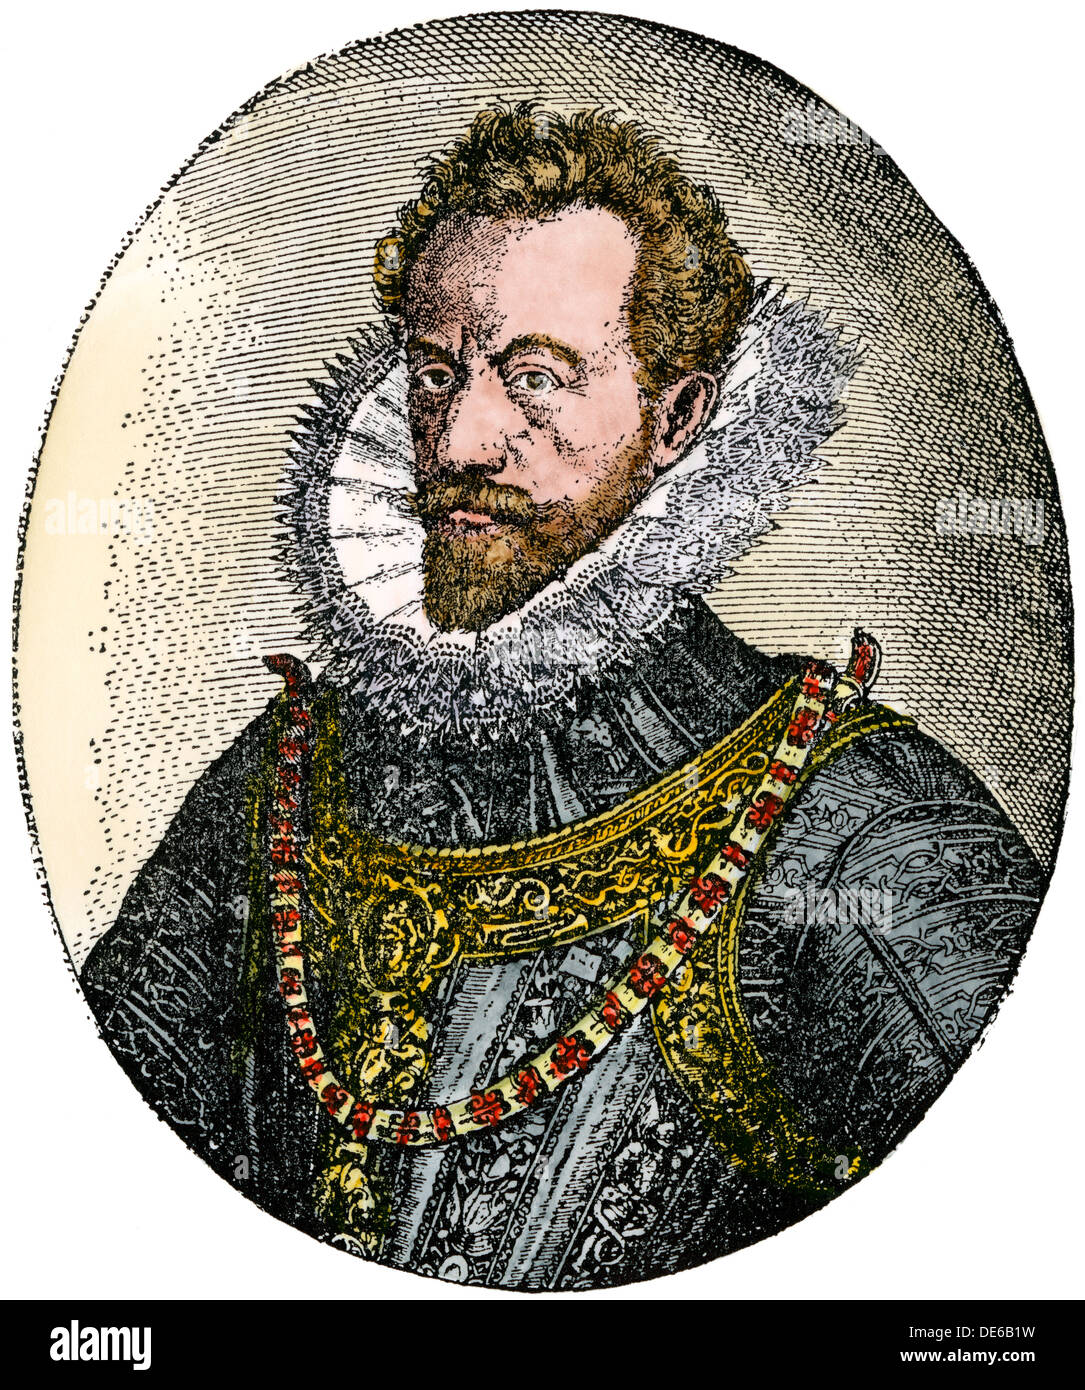 Alexander Farnese, Duque de Parma, español, gobernador general de los Países Bajos. Xilografía coloreada a mano Foto de stock